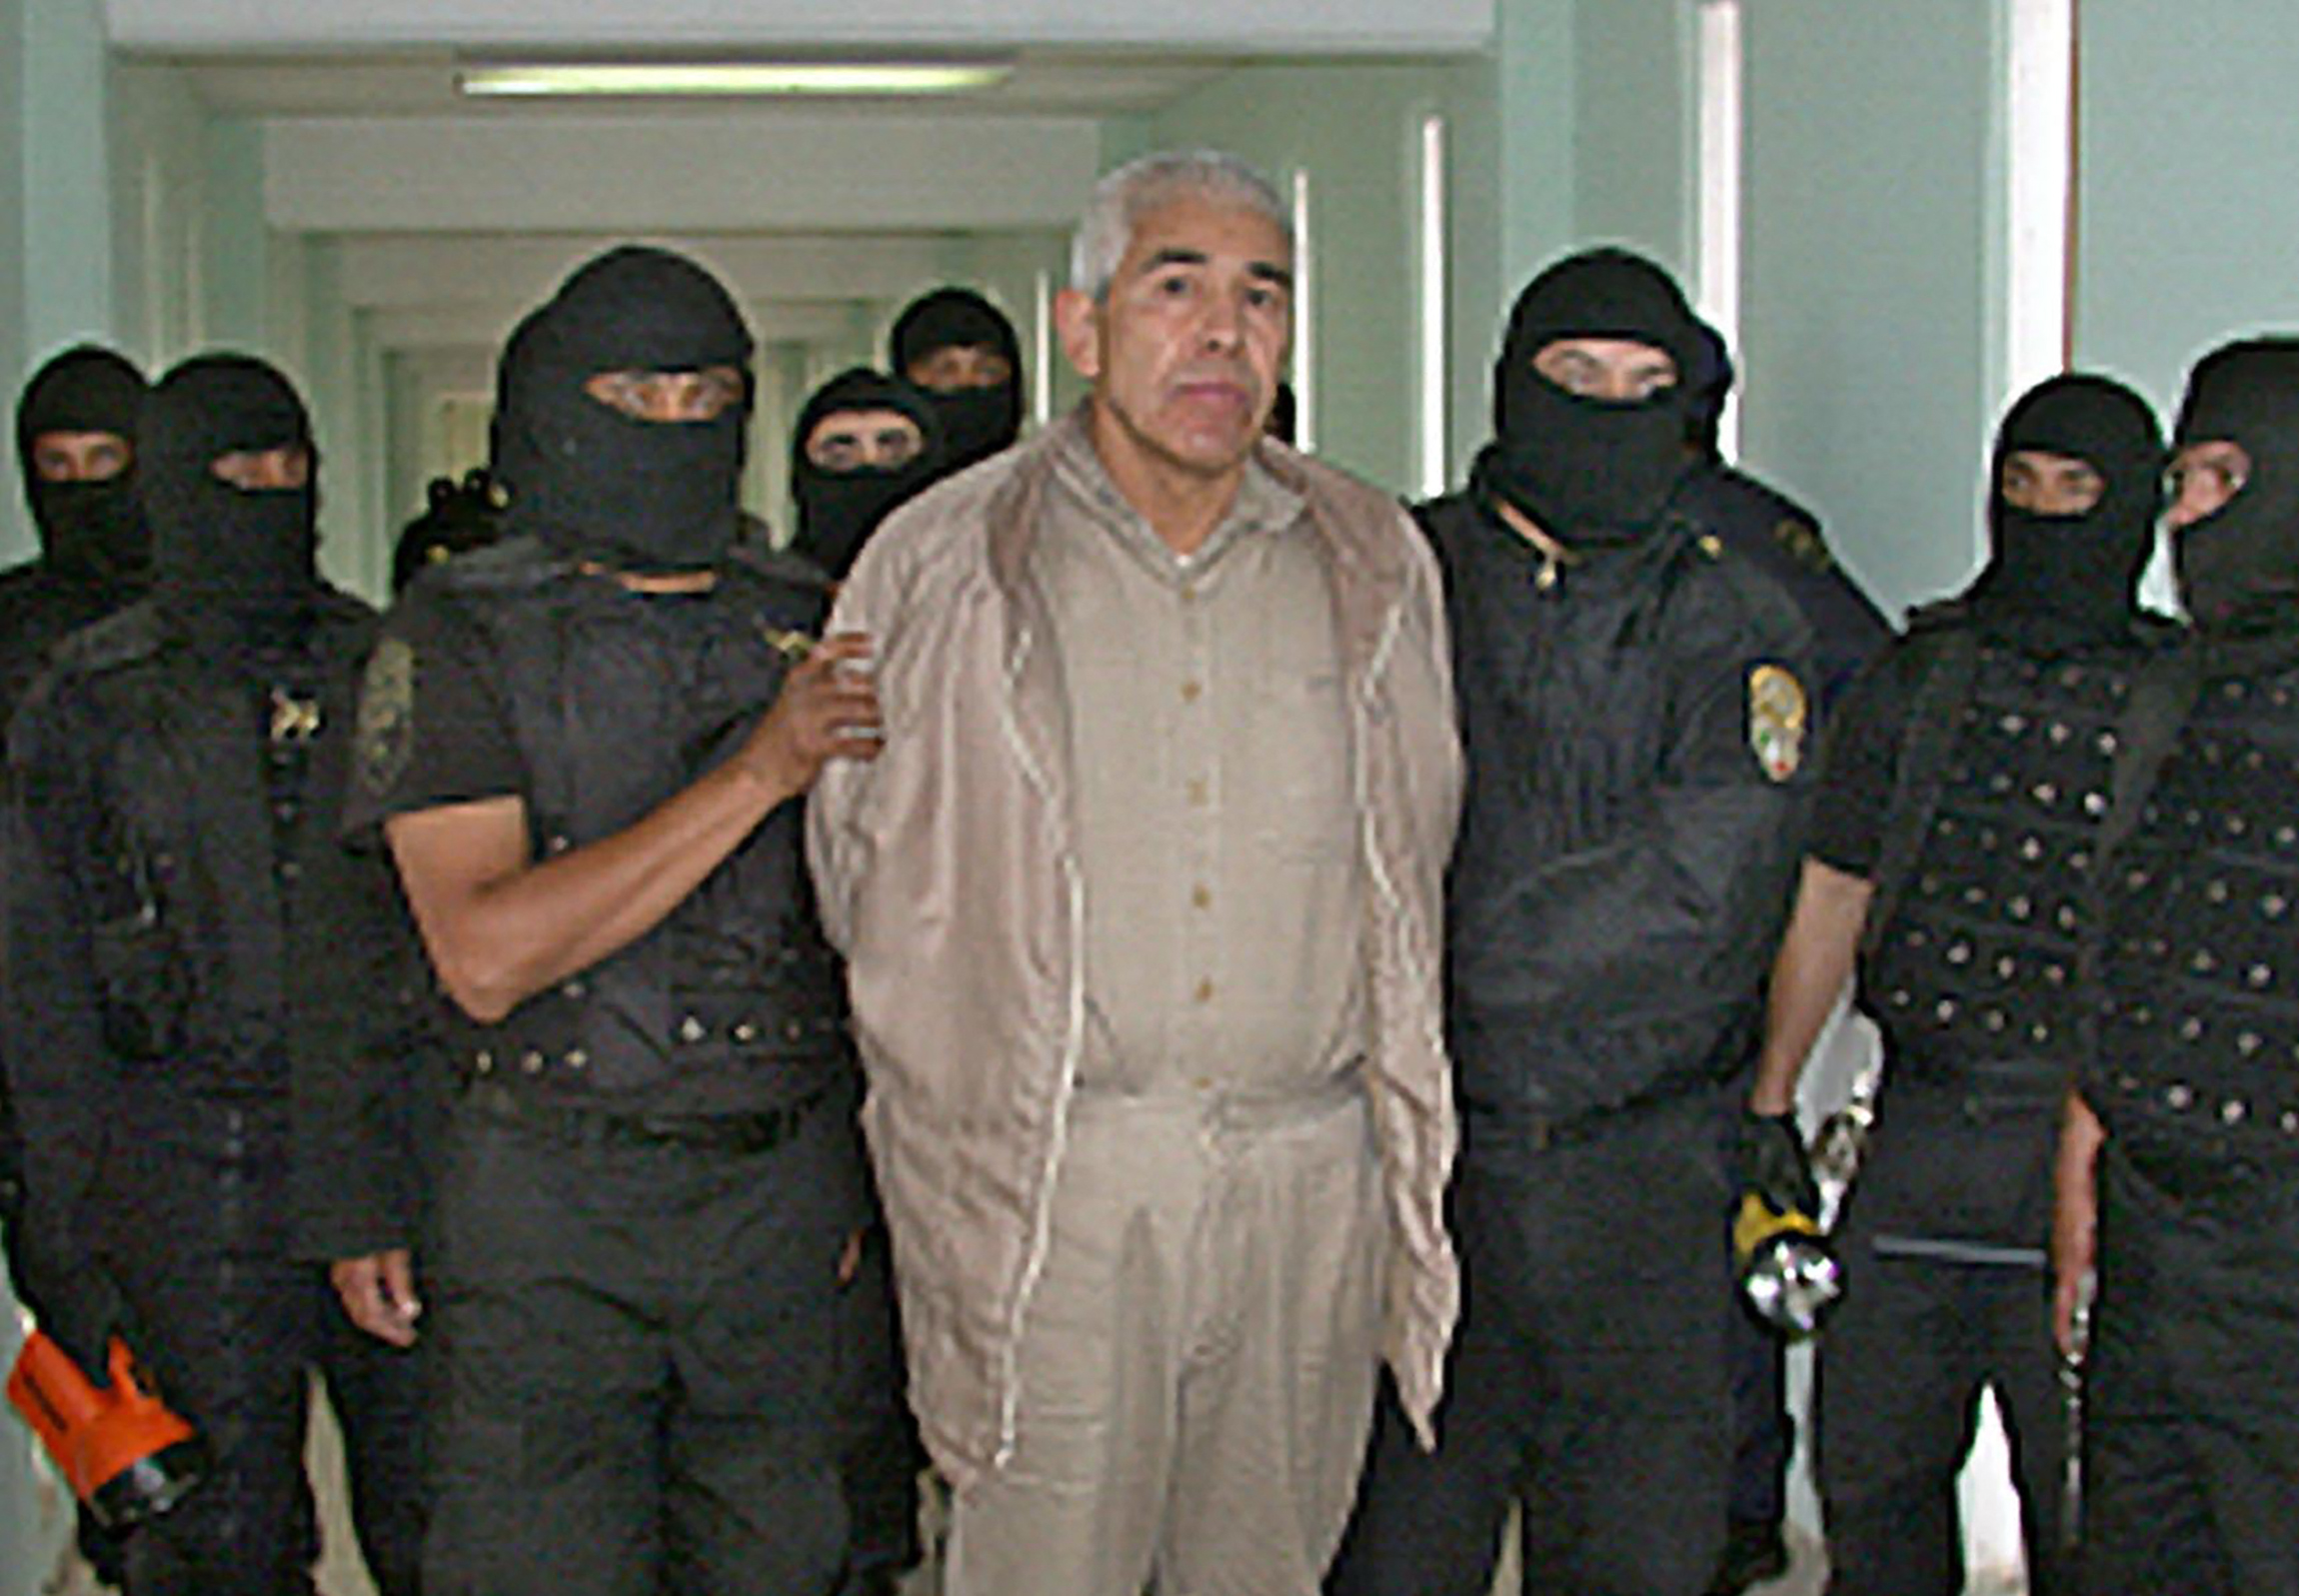 El capo aseguró que no volvería al narcotráfico (Mexican Federal Police / AFP)